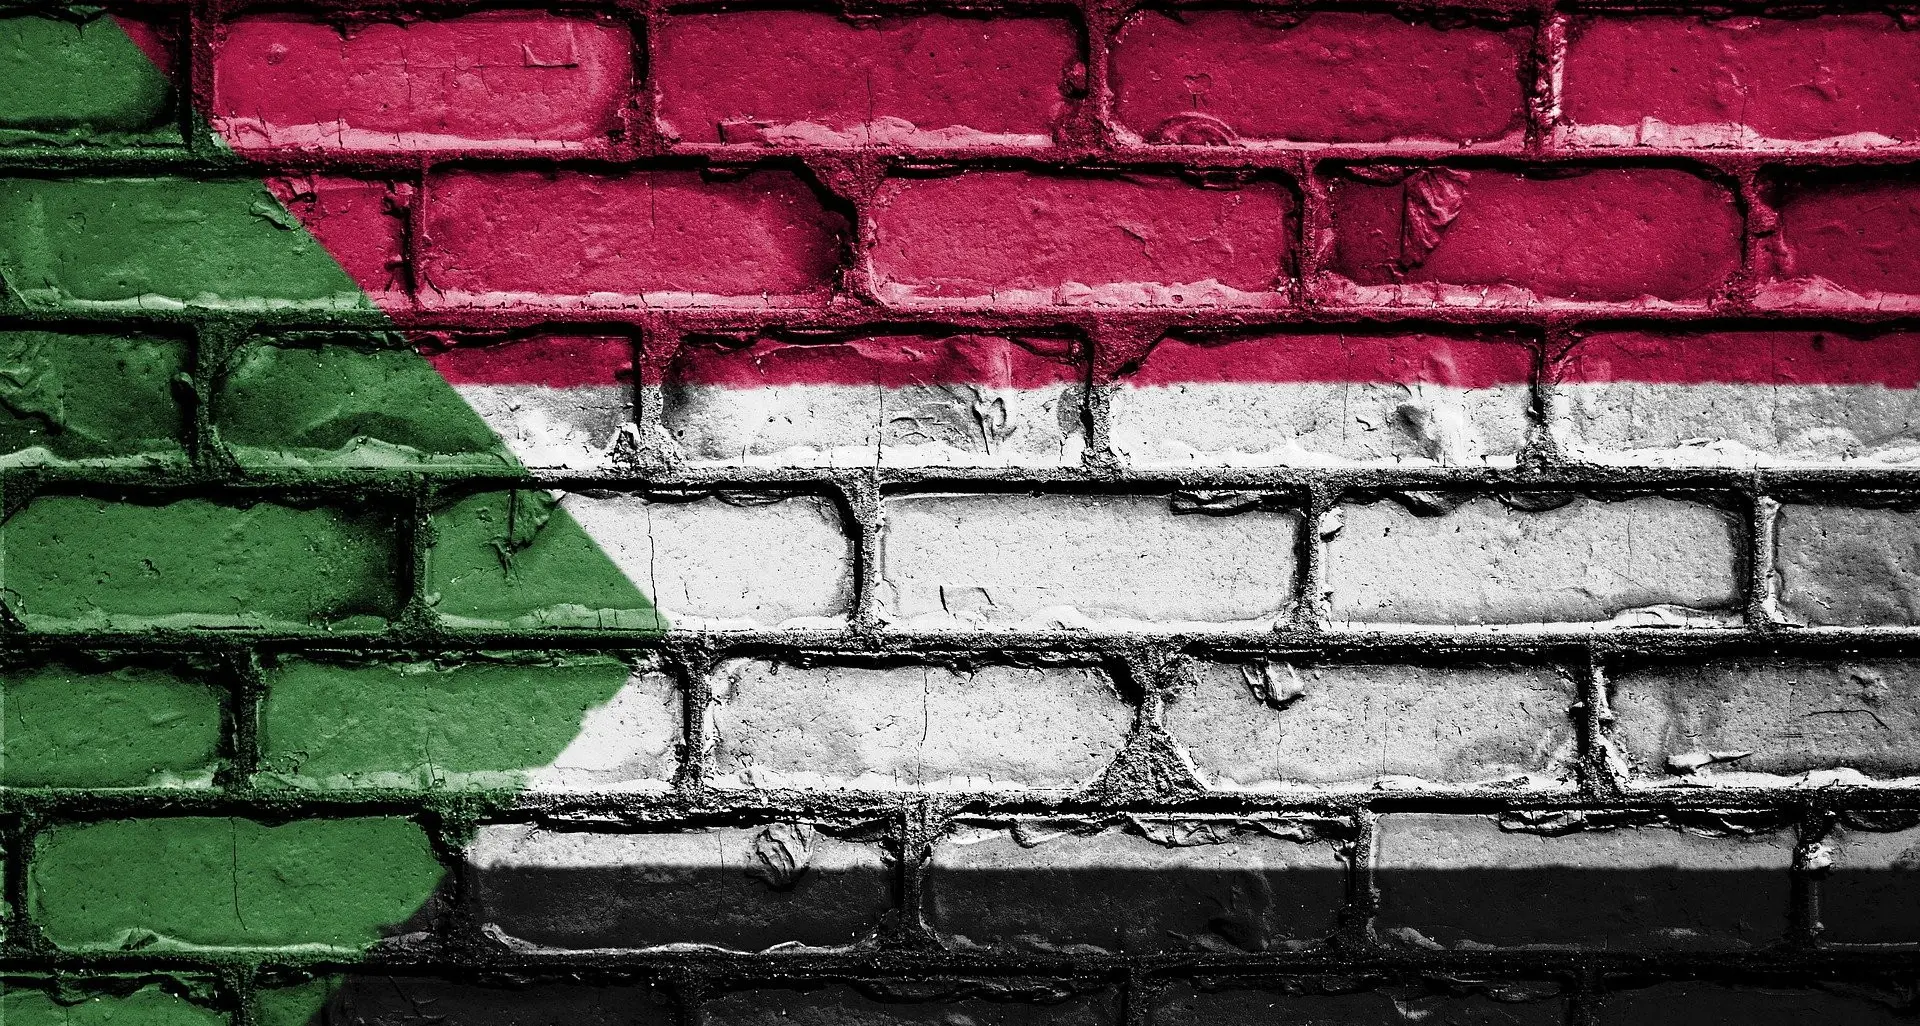 Colpo di Stato in Sudan, condanna della CGIL